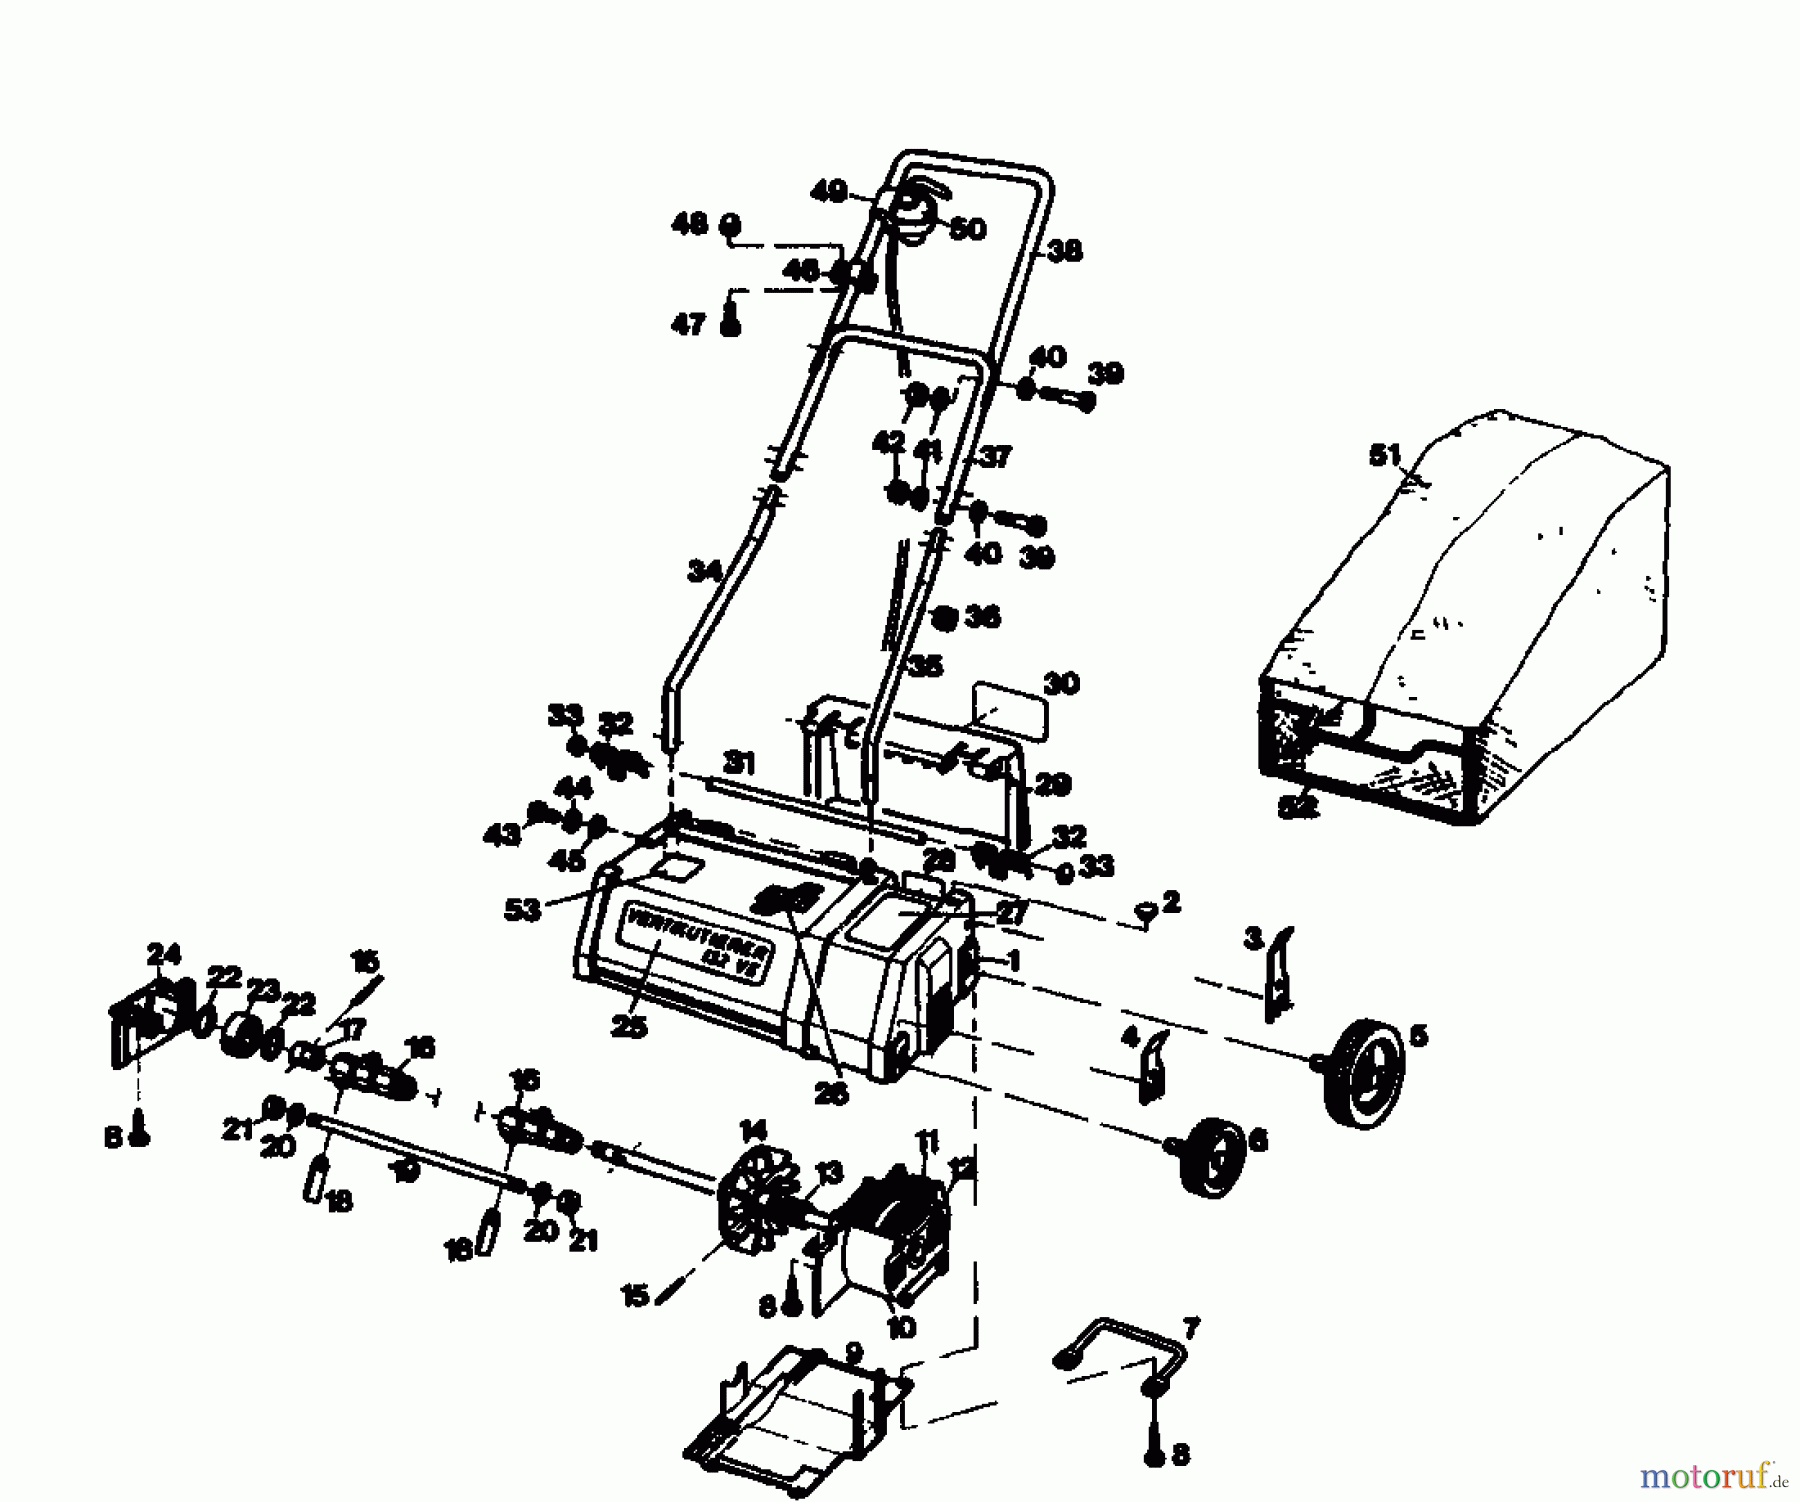  Golf Scarificateur électrique 132 VE 02890.01  (1985) Machine de base